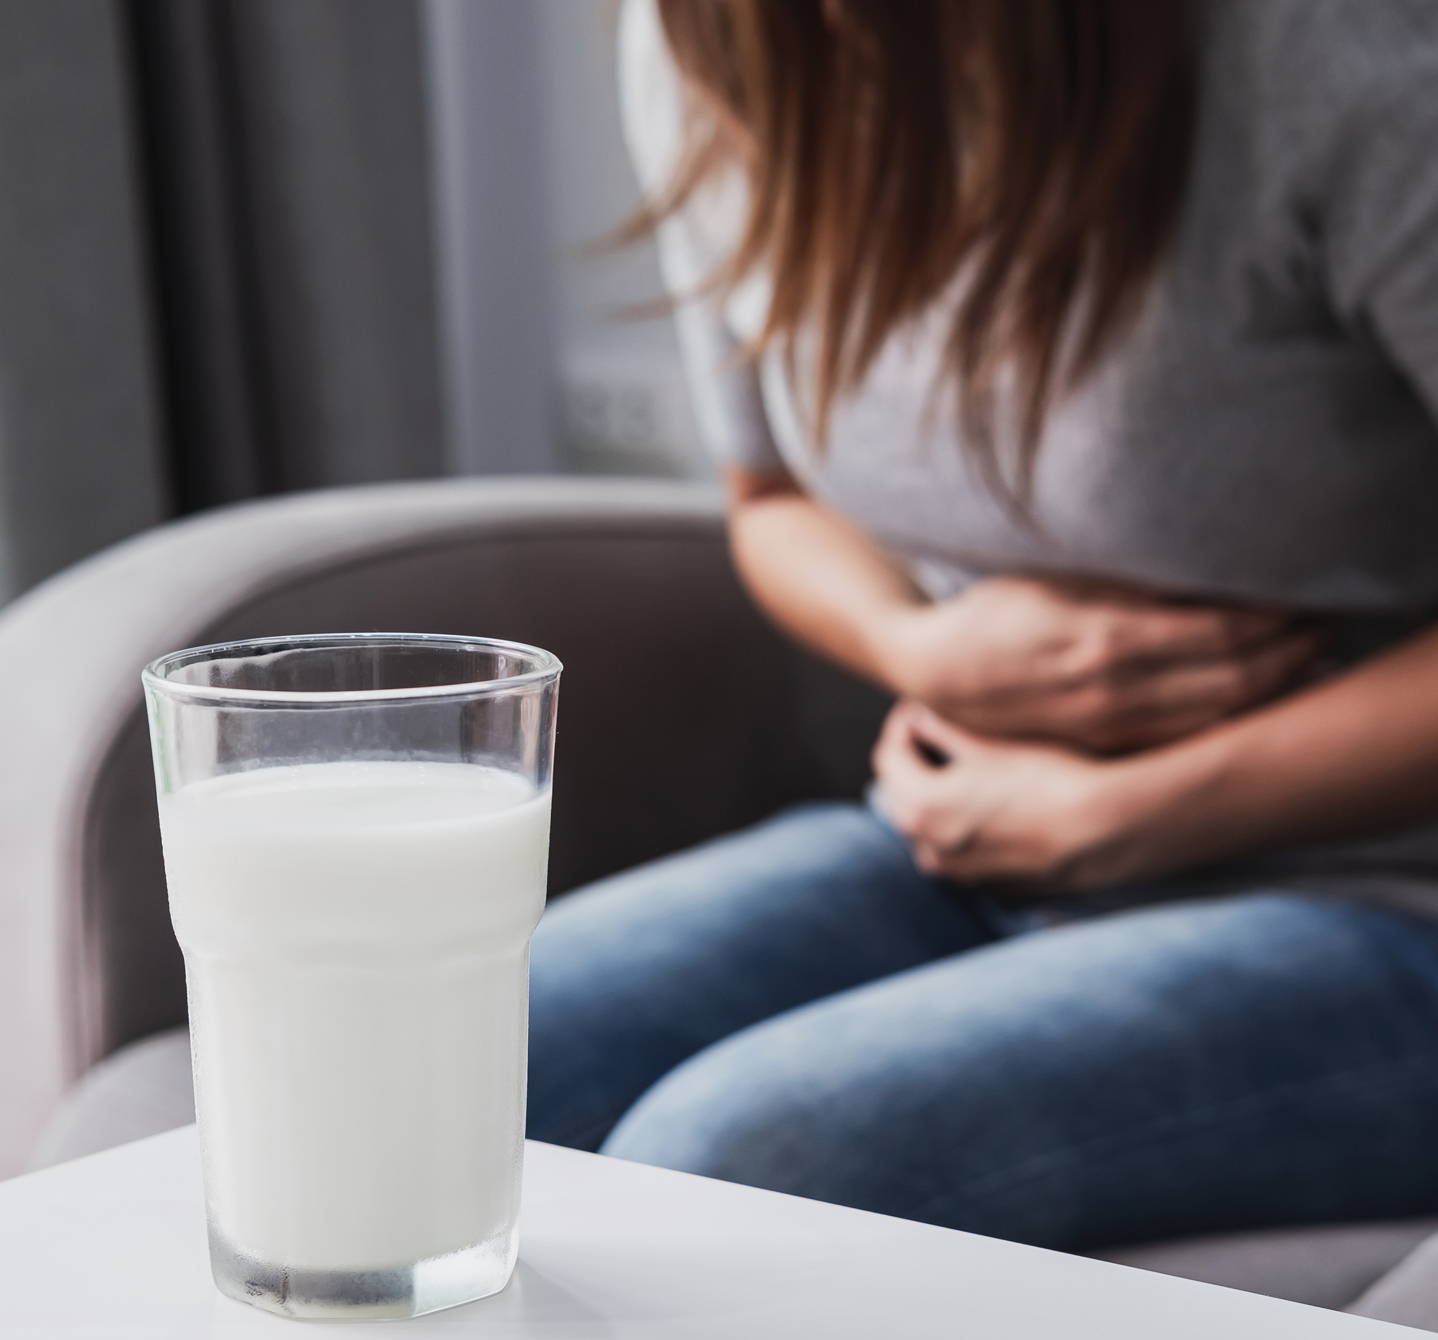 Allergie alimentaire ou intolérance? Ce verre de lait donnera un mal de ventre à cette femme en cas d’intolérance au lactose